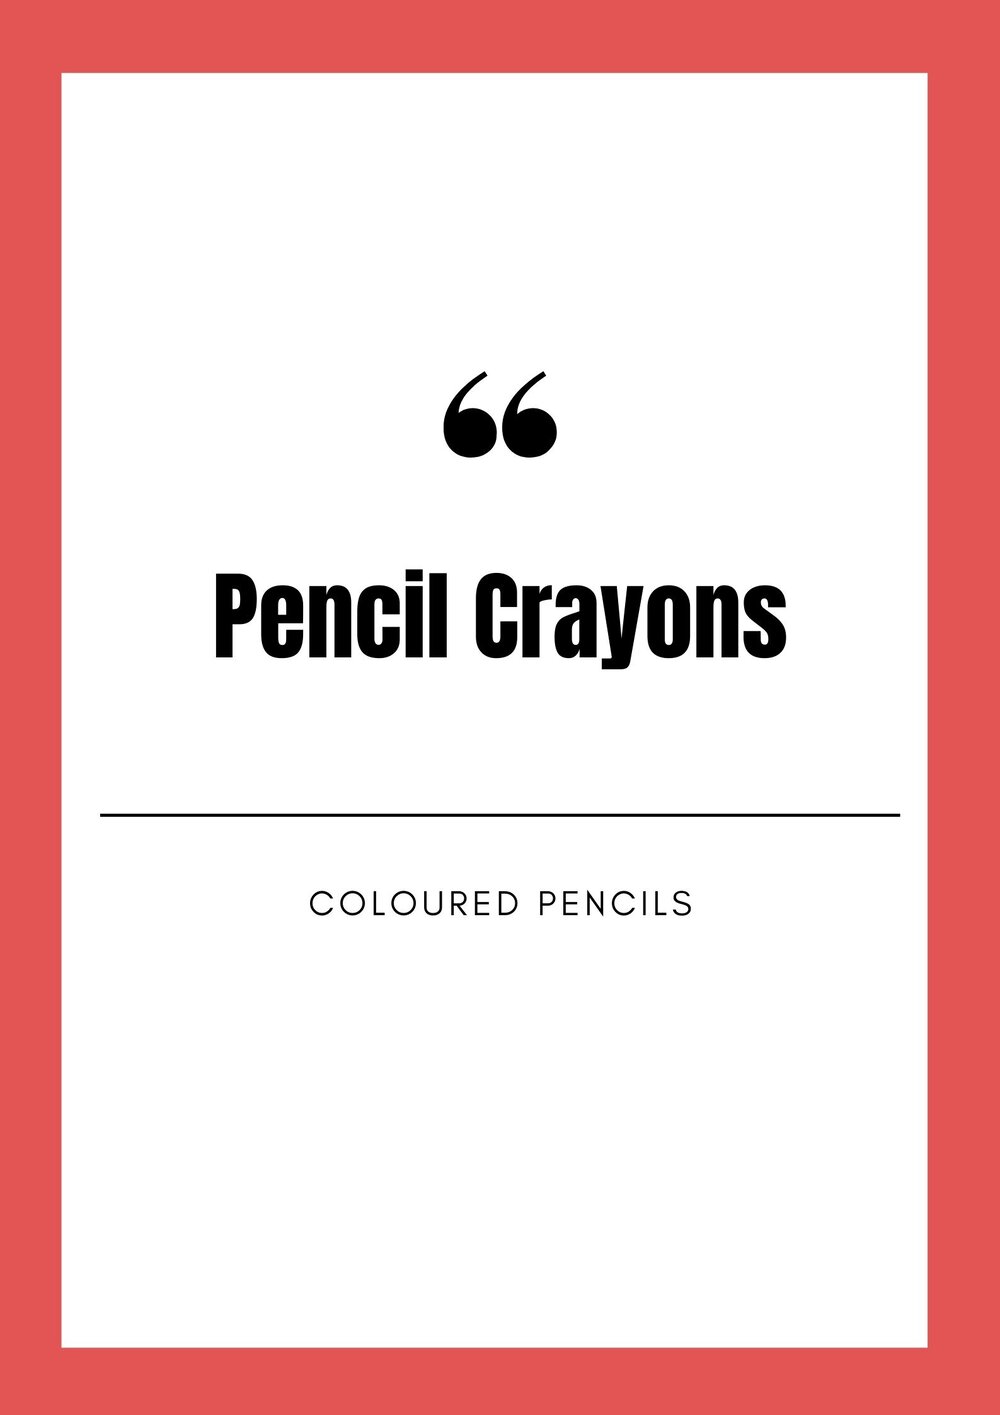 pencil crayons.jpg